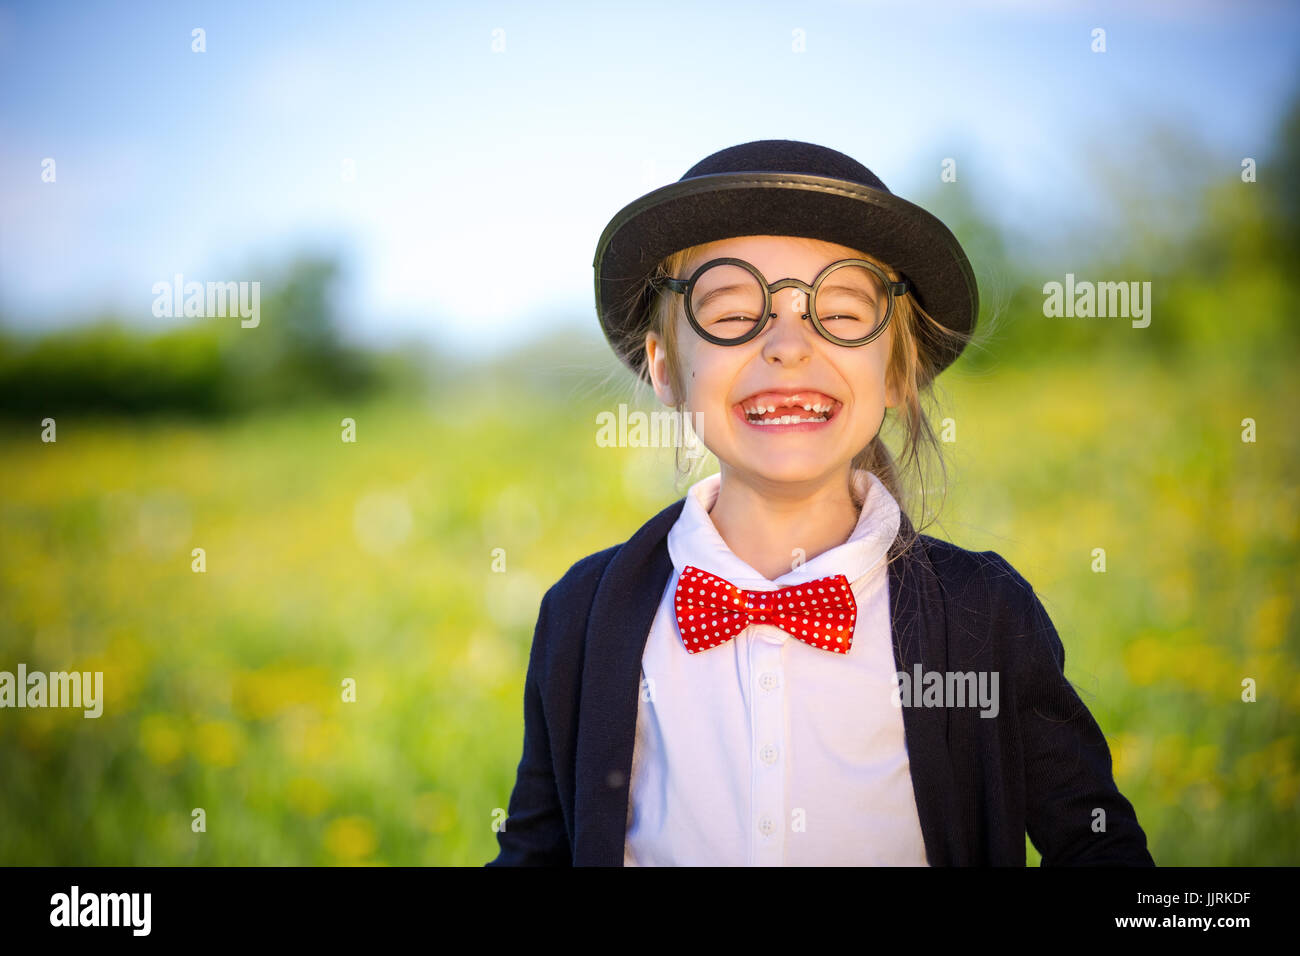 Funny felice bambina a bow tie e cappello bowler. Foto Stock